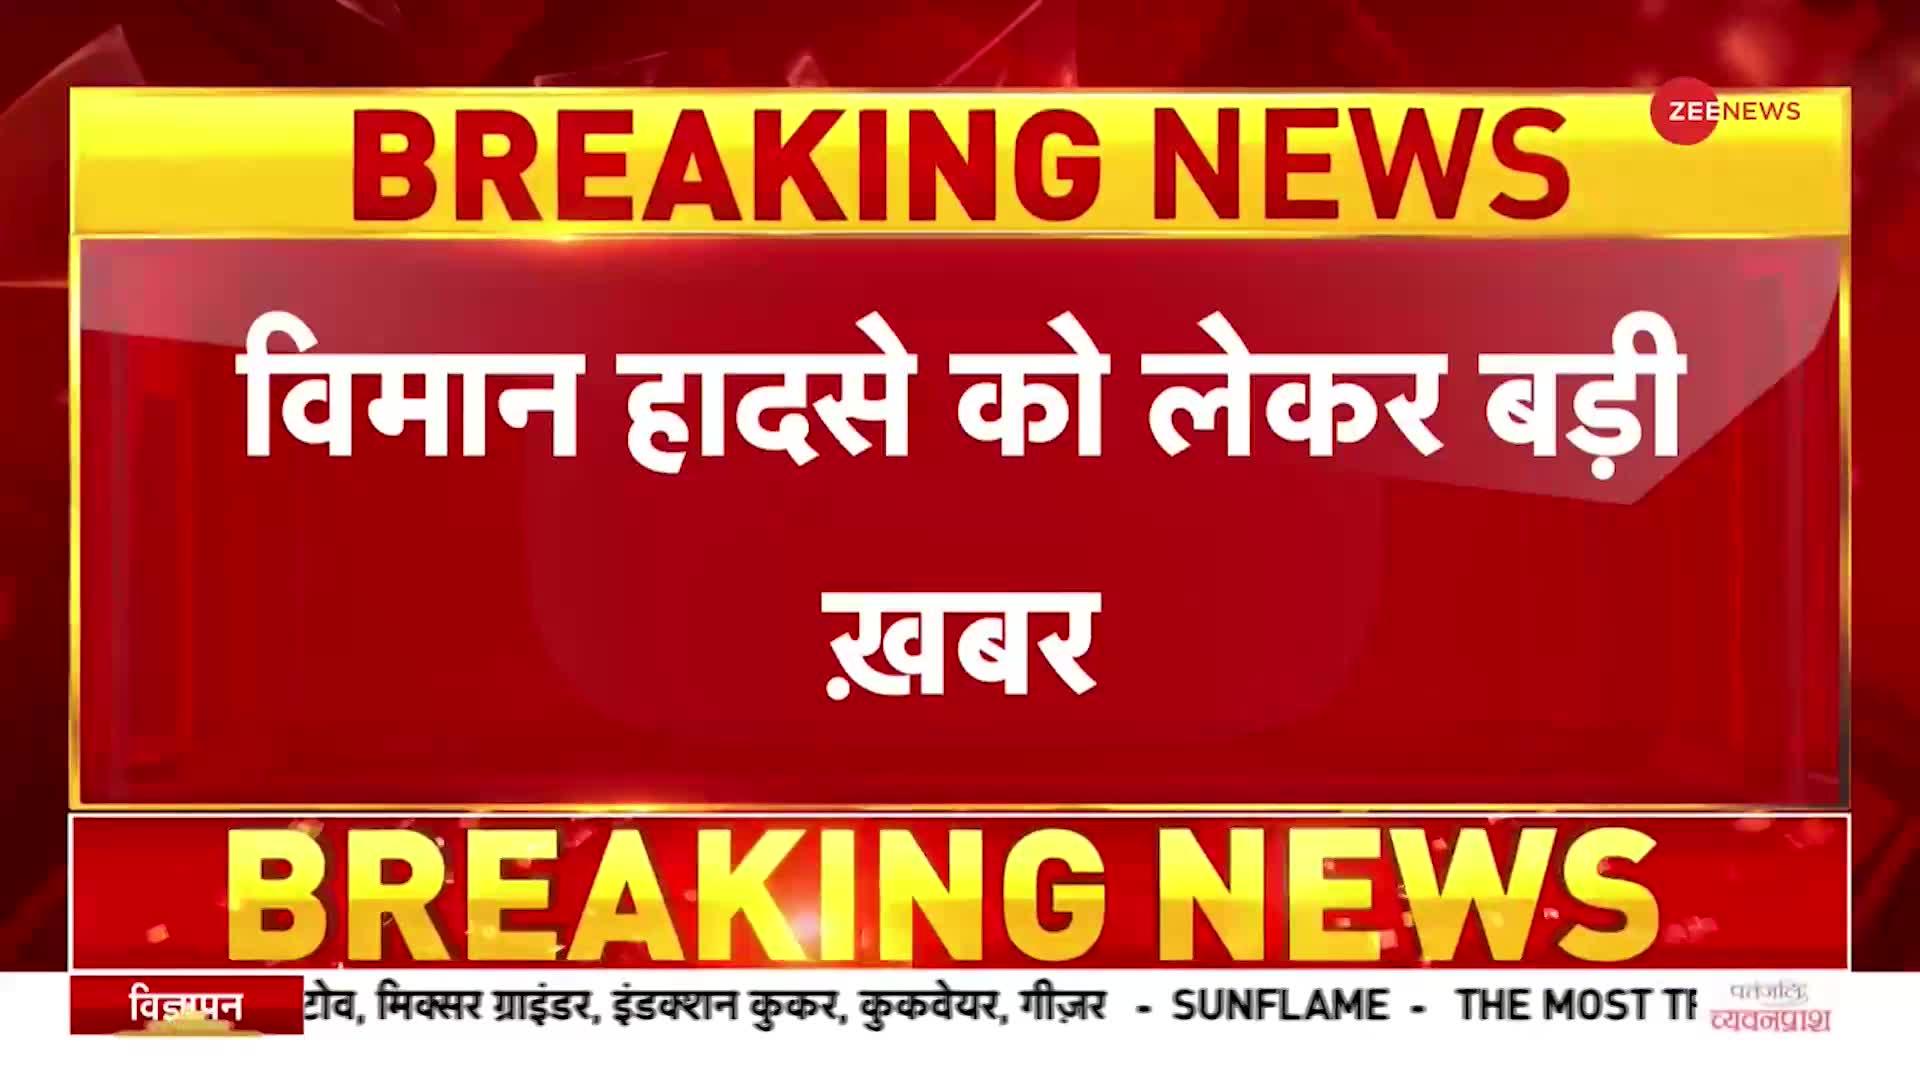 Rajasthan-MP में बड़े विमान क्रैश, IAF ने दिए जांच के आदेश